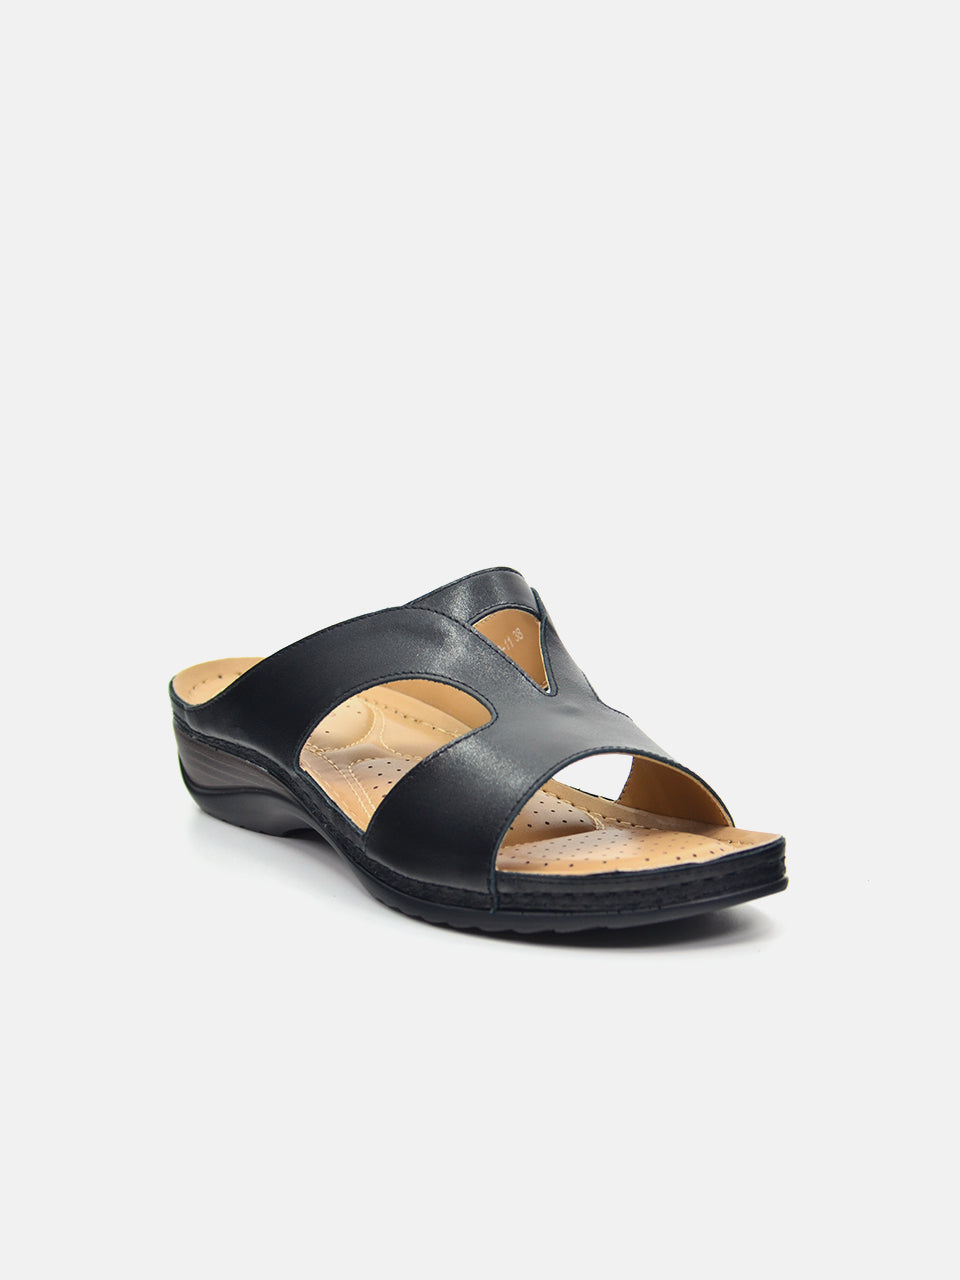 Michelle Morgan 88909-11 Women's Flat Sandals #color_Black